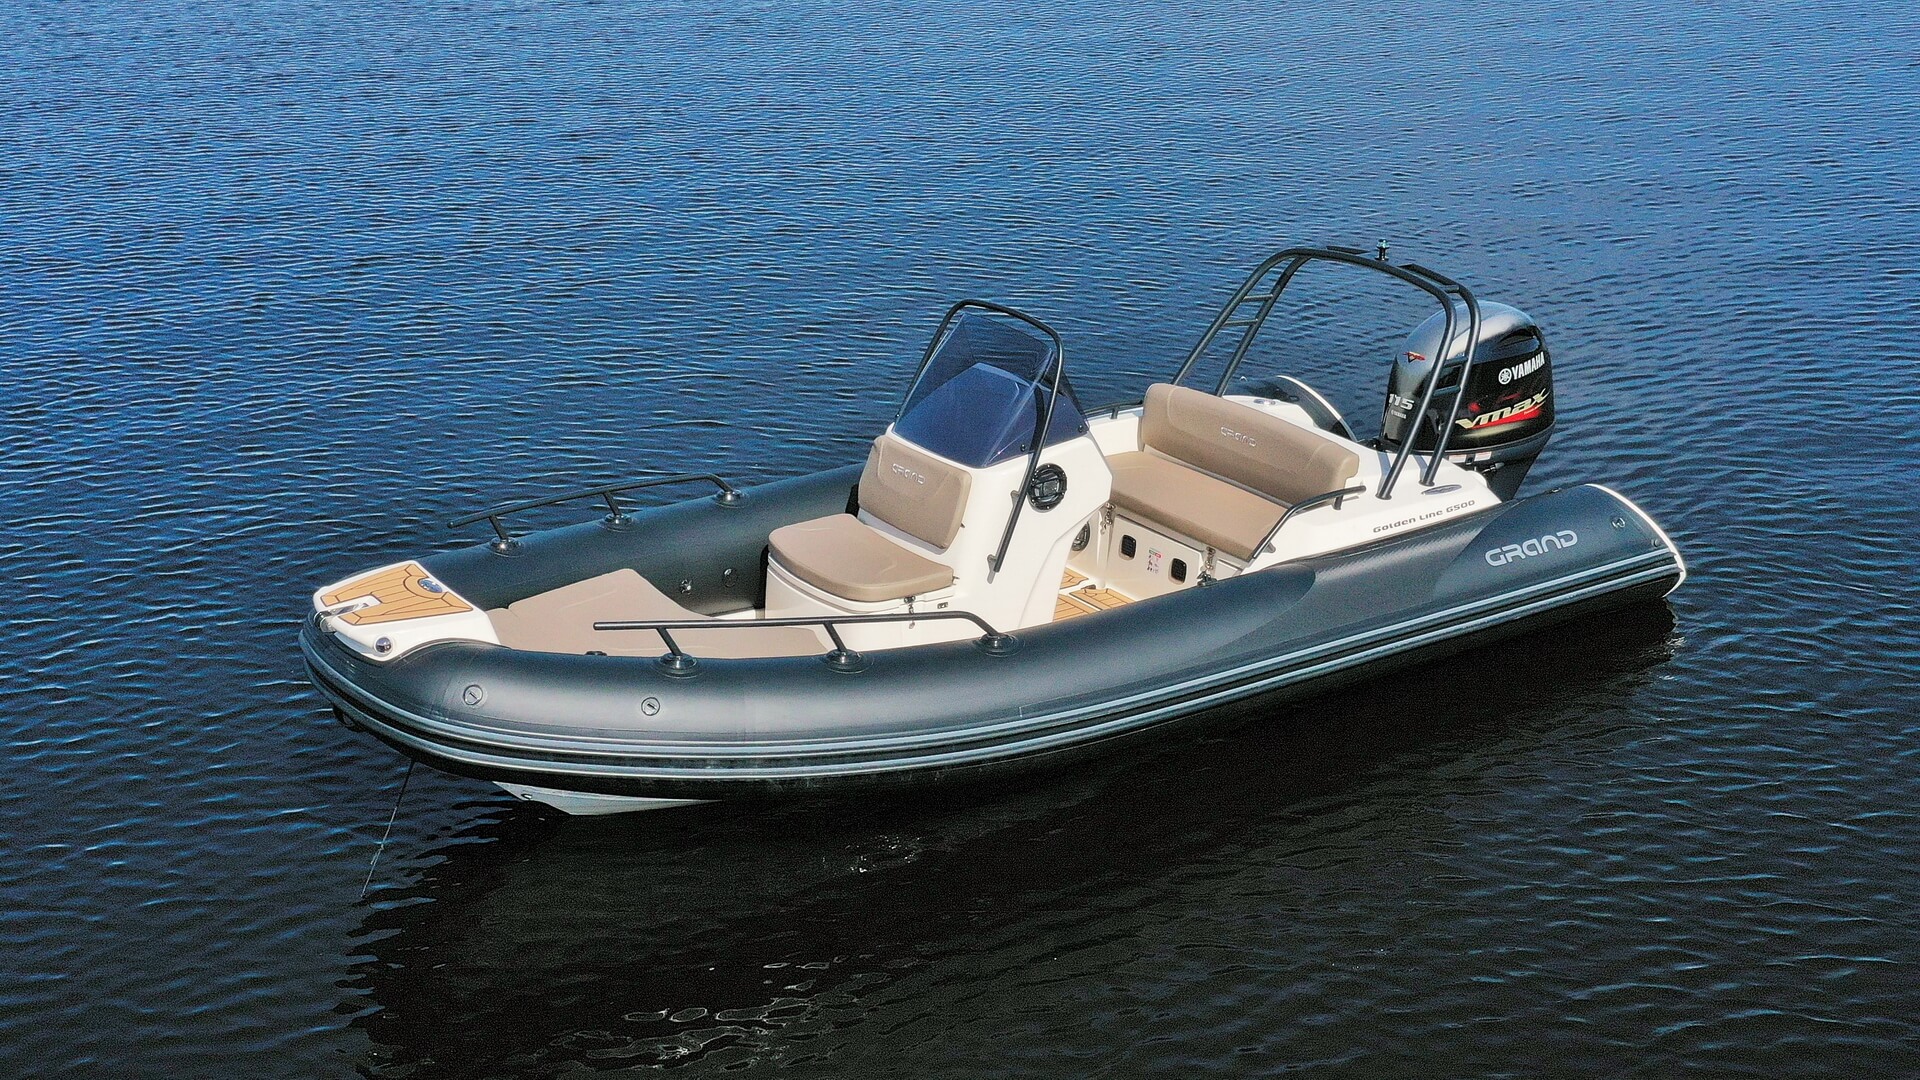 Надувная лодка с жестким дном GRAND Golden Line G500LF, Надувная лодка GRAND Golden Line G500LF, GRAND Golden Line G500LF, GRAND Golden Line G500, GRAND G500LF, GRAND G500, Надувная лодка GRAND, Надувная лодка ГРАНД, RIB лодка, стеклопластиковая лодка с надувными баллонами, Надувная лодка с жестким дном, RIB, Rigid Inflatable Boats